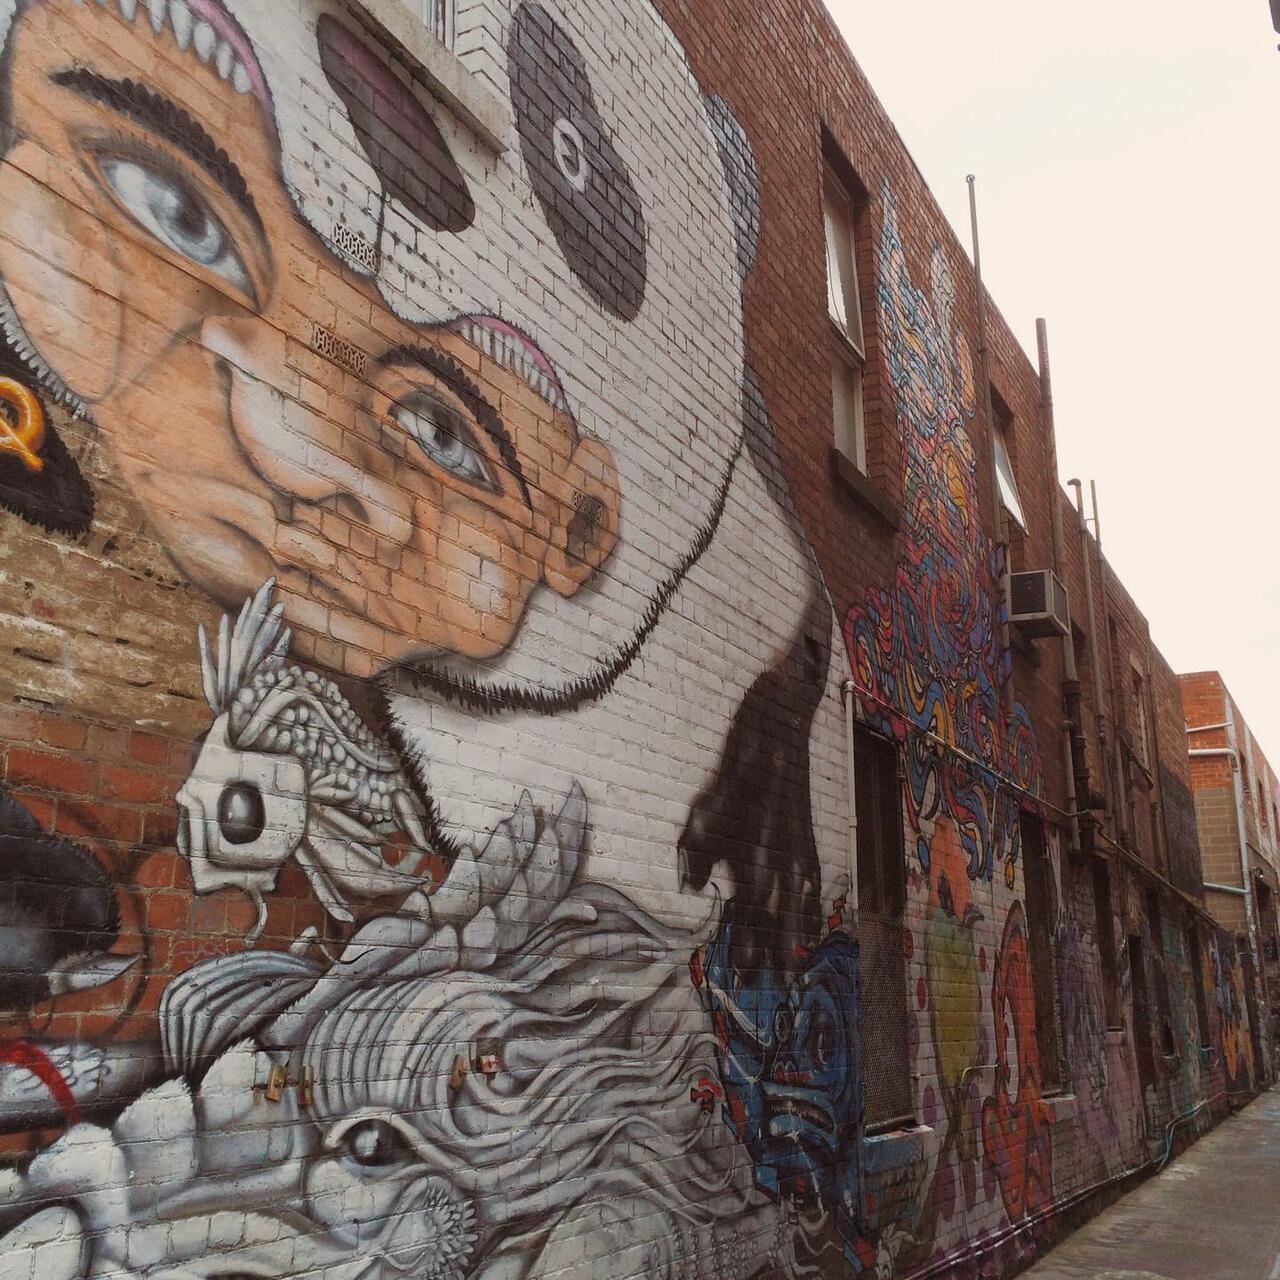 #mural #graffiti #art #blenderlane #melbourne #australia (@ Blender Lane Artists Market) https://www.swarmapp.com/c/jwFZGewlXej http://t.co/N4Bs7eaYEm